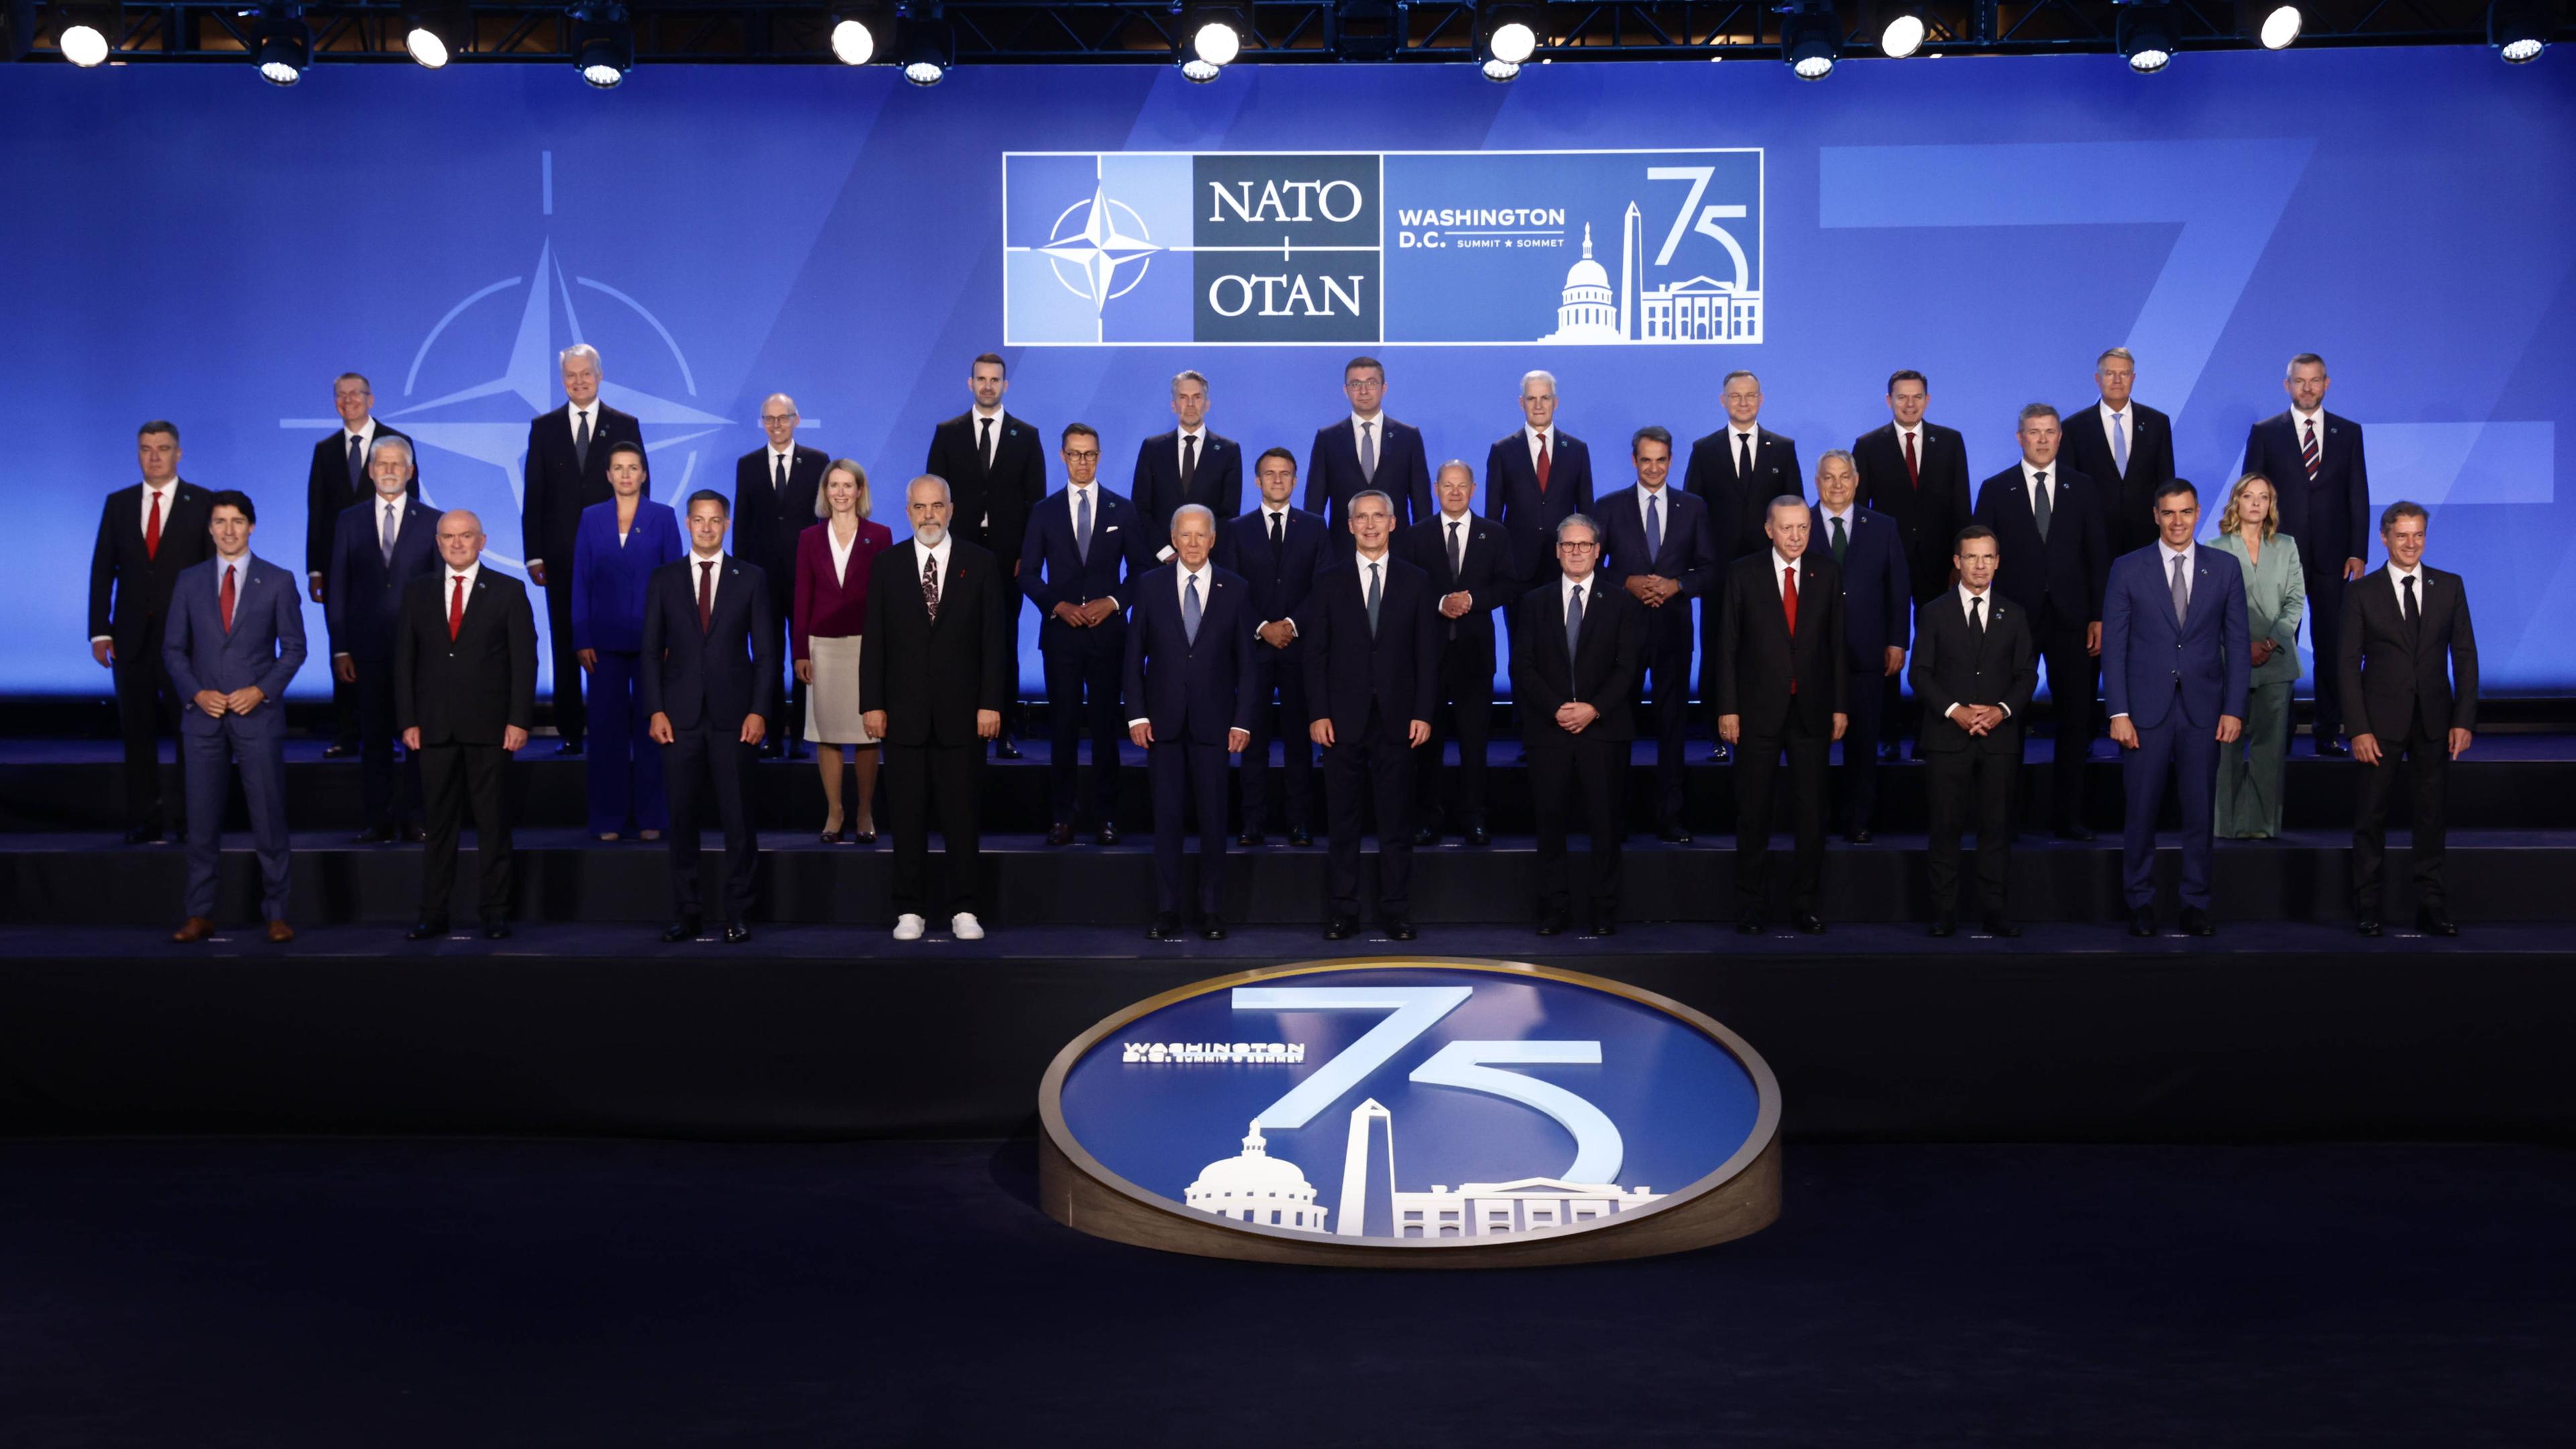 Familienfoto beim Nato-Gipfel in den USA